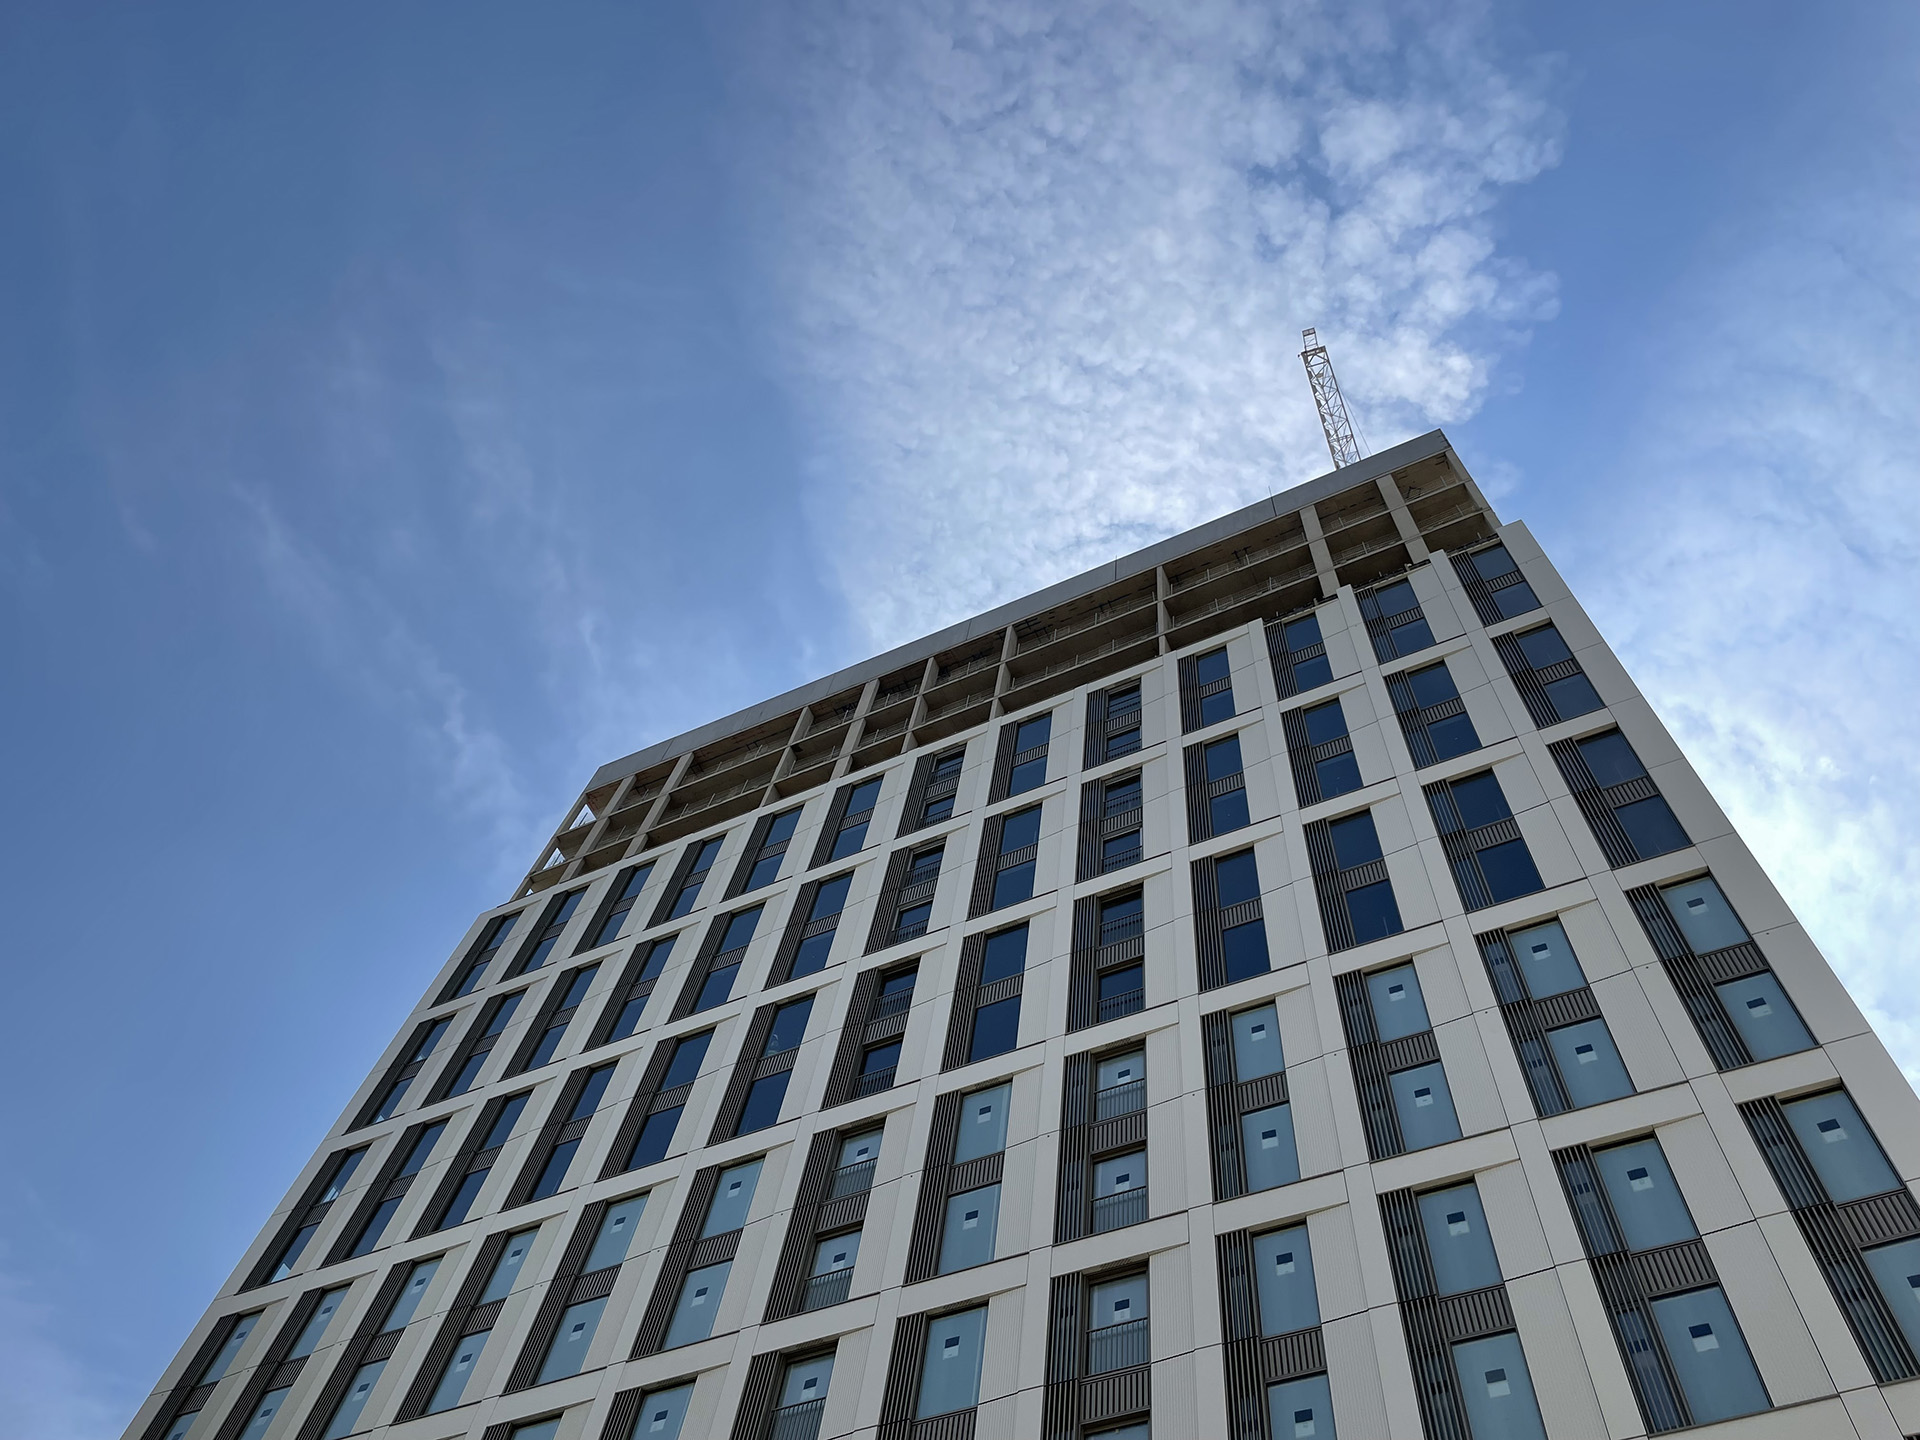 Sipral se dodávkou 40 000 m² fasádního pláště podílí na stavbě projektu Cherry Park v londýnské čtvrti Stratford